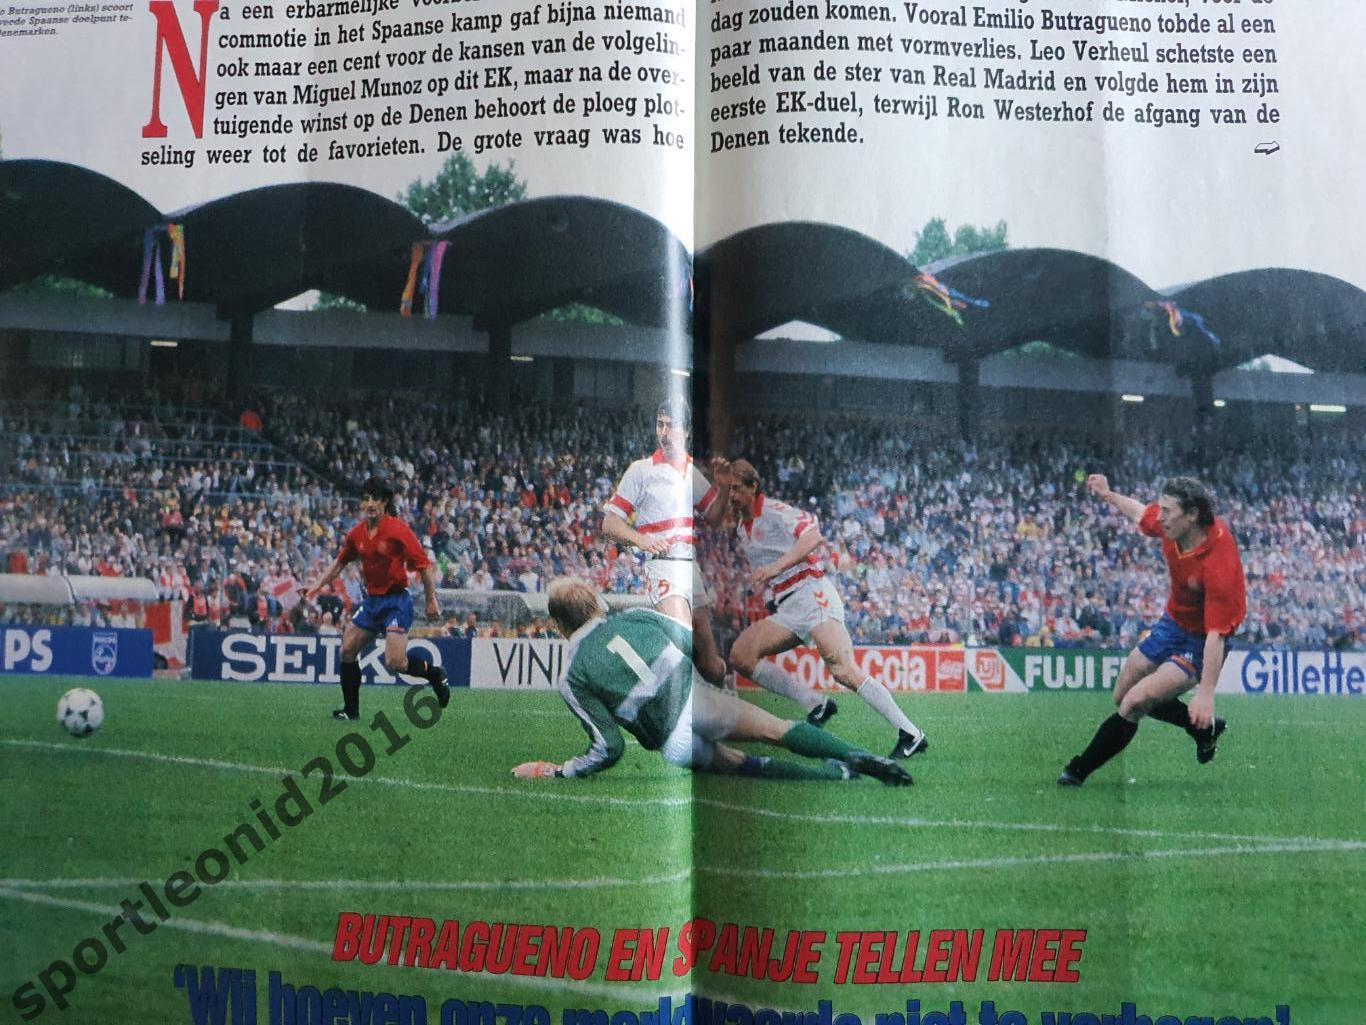 Voetbal International 1988.Годовая подписка.52 номера +4 спецвыпуска к Евро-88.6 4